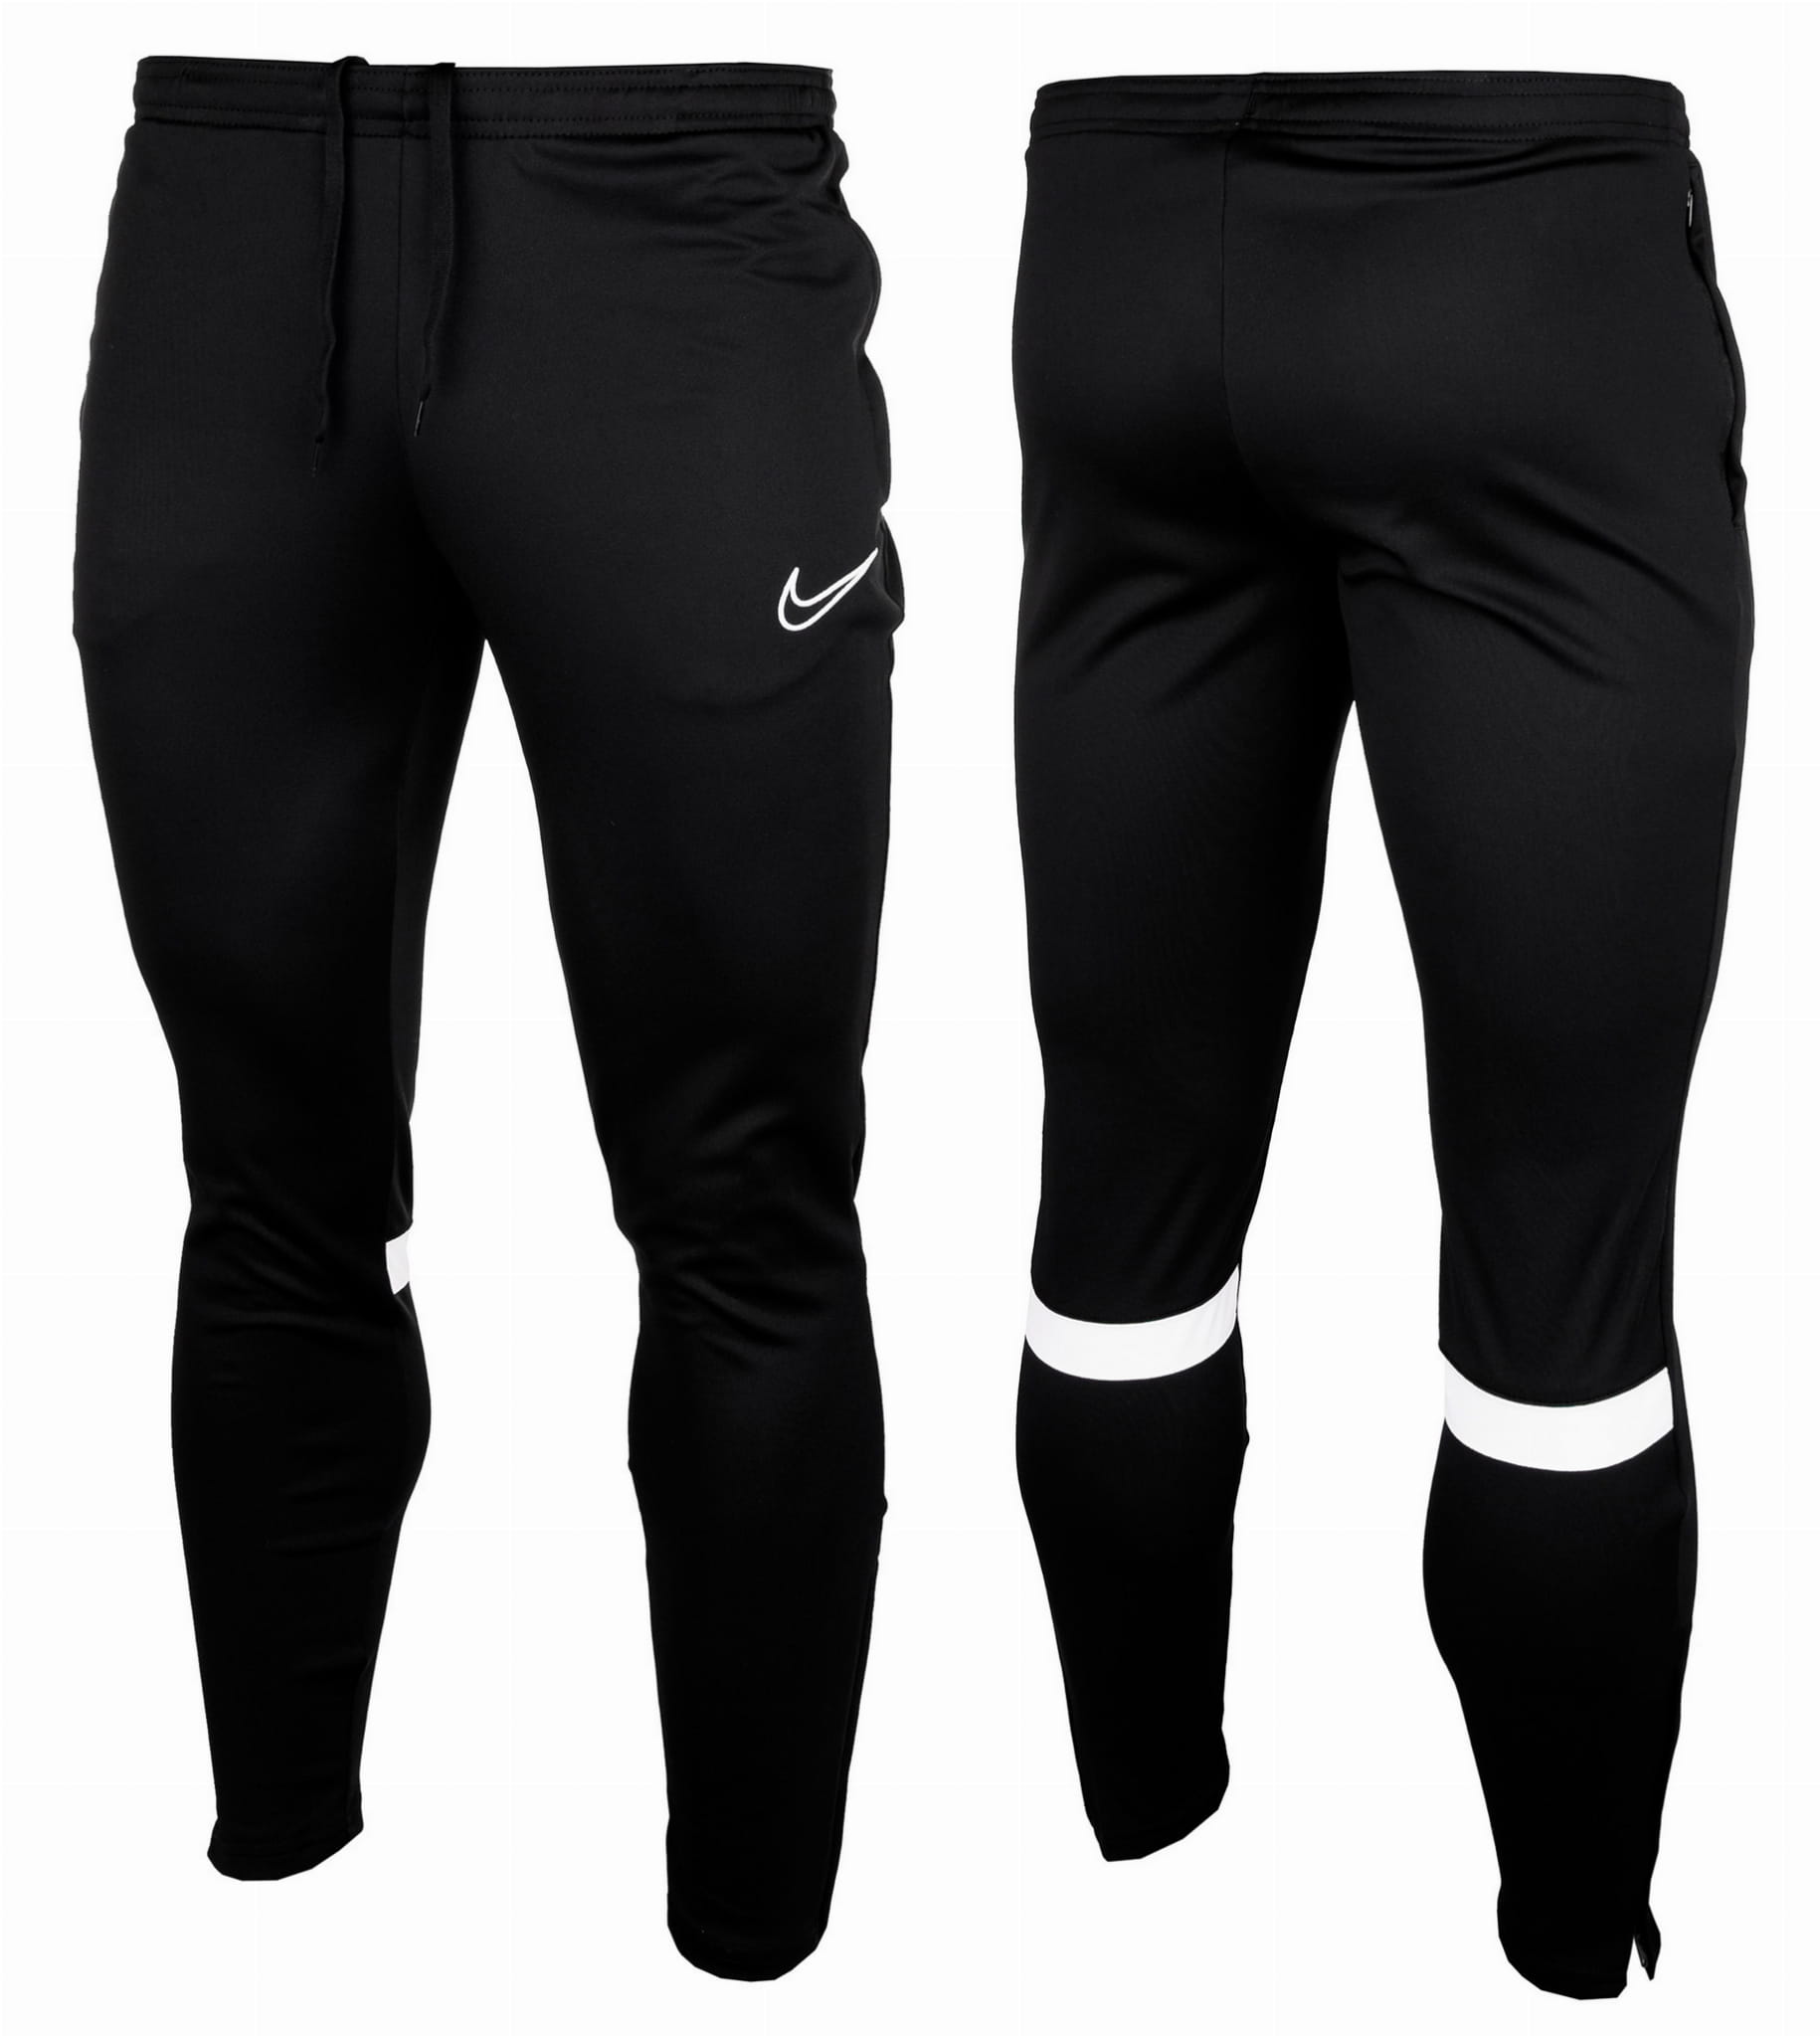 Fatal precio Arena Pantalones Hombre Nike DriFit Academy - CW6122-010 - negro – depor8